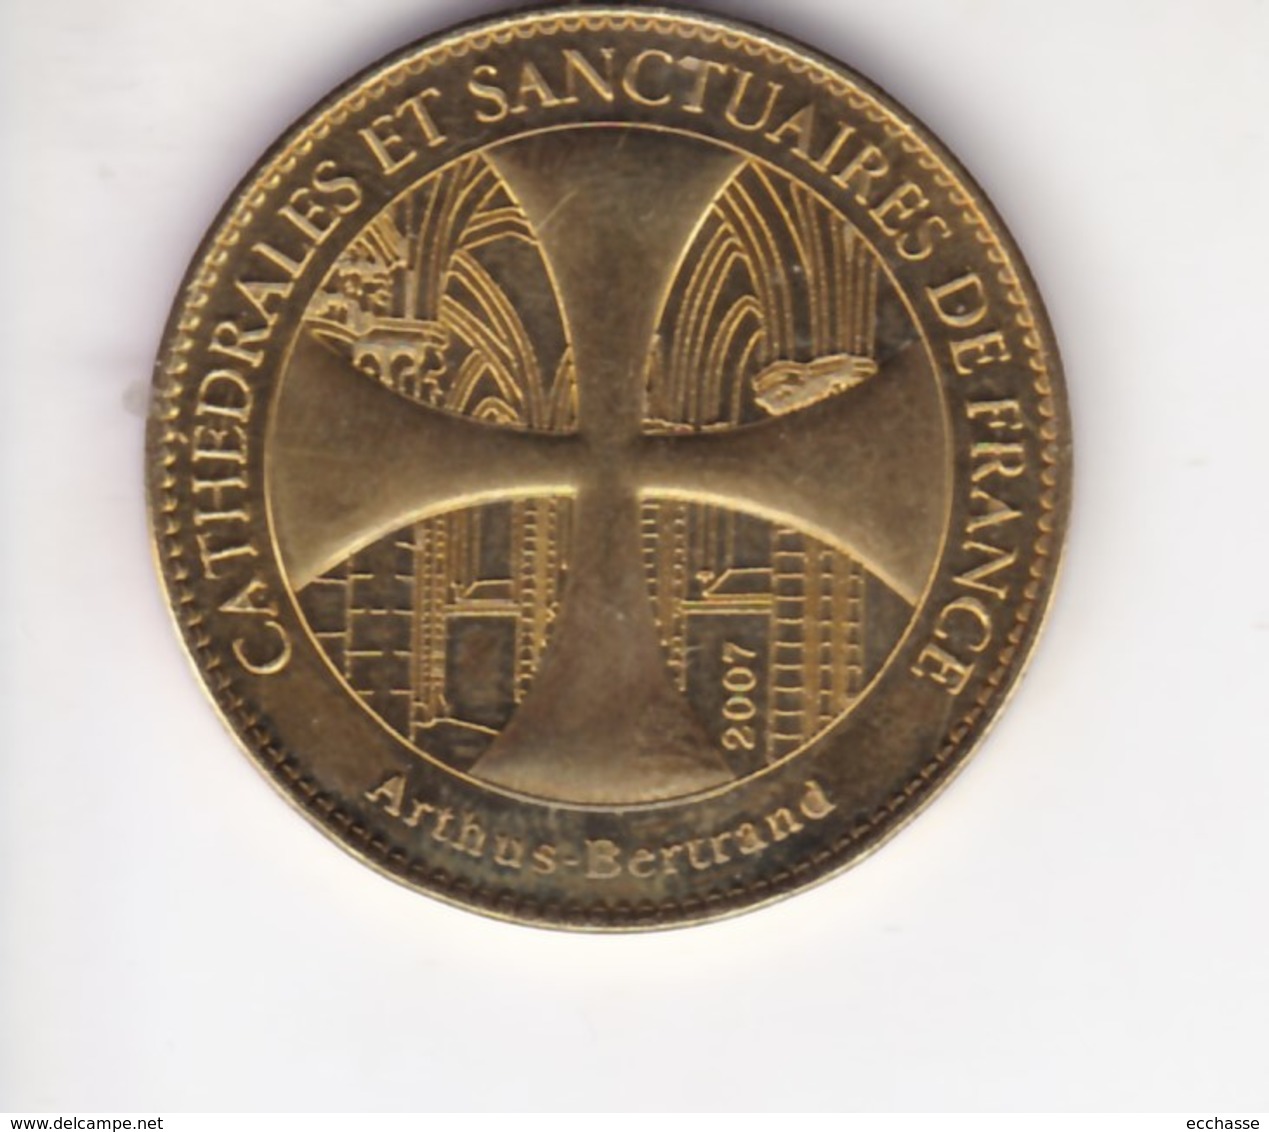 Jeton Médaille Arthus Bertrand Cathedrales Et Sanctuaires De France Eglise Sainte Radegonde 2007 - 2007